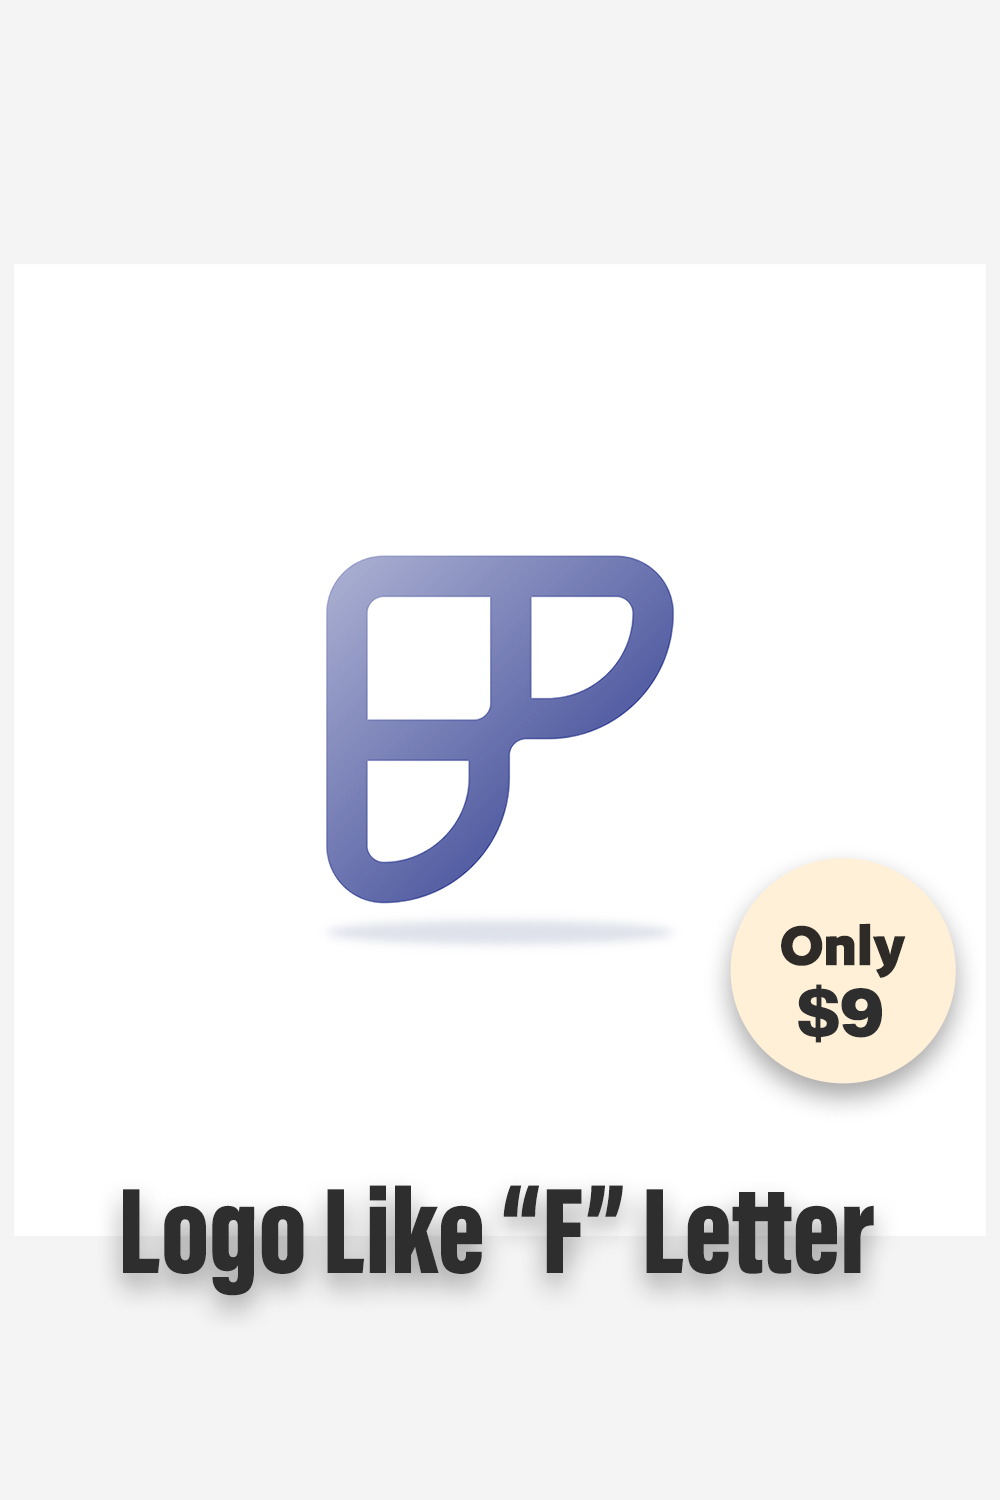 Logo Like F Letter Pinterest image.